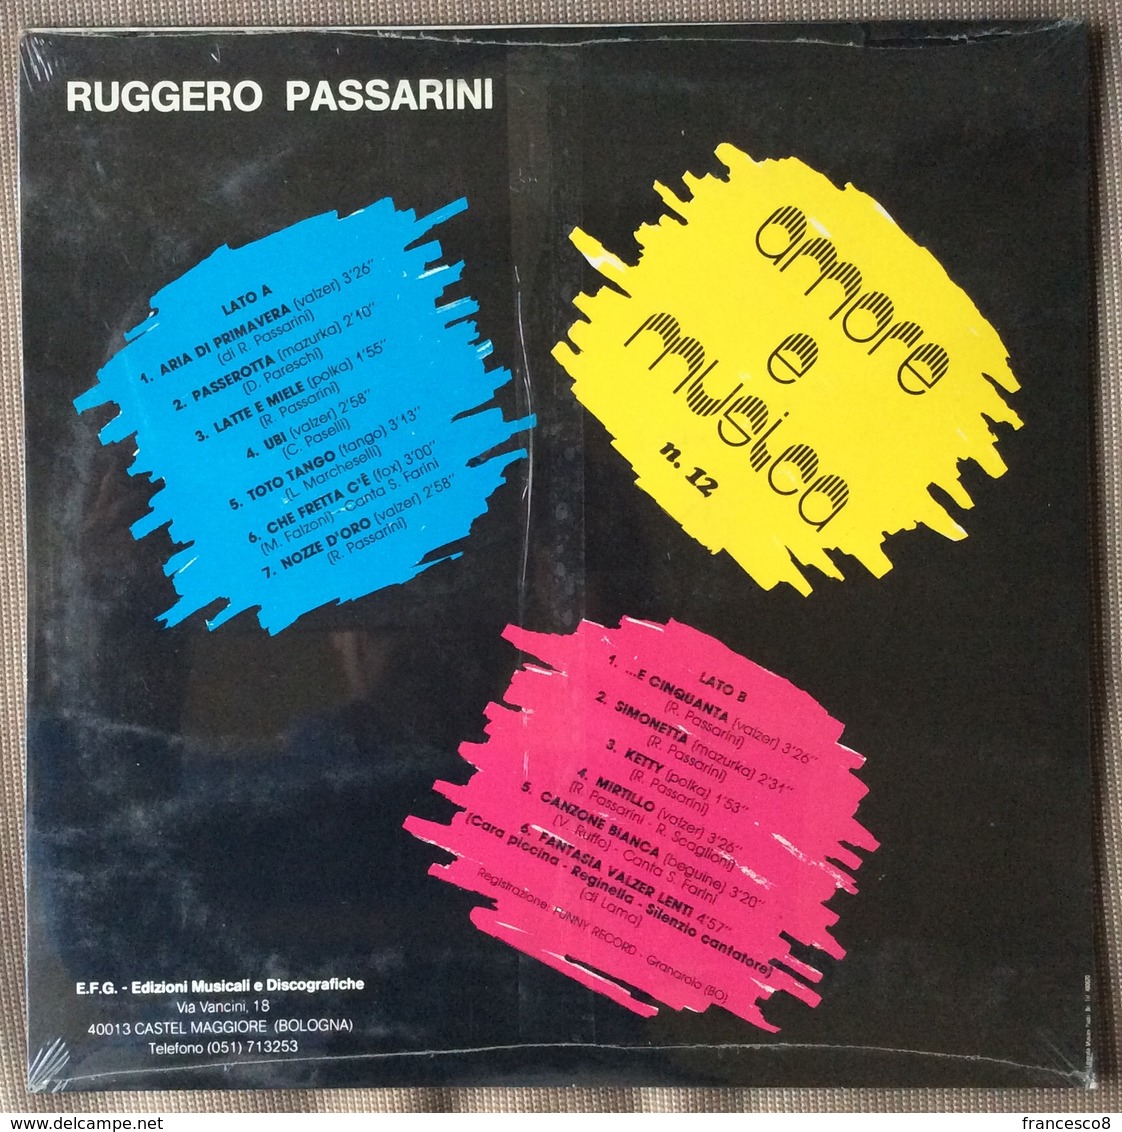 LP 33 - RUGGERO PASSARINI FISARMONICA E ORCHESTRA . AMORE E MUSICA N 12 - Altri - Musica Italiana